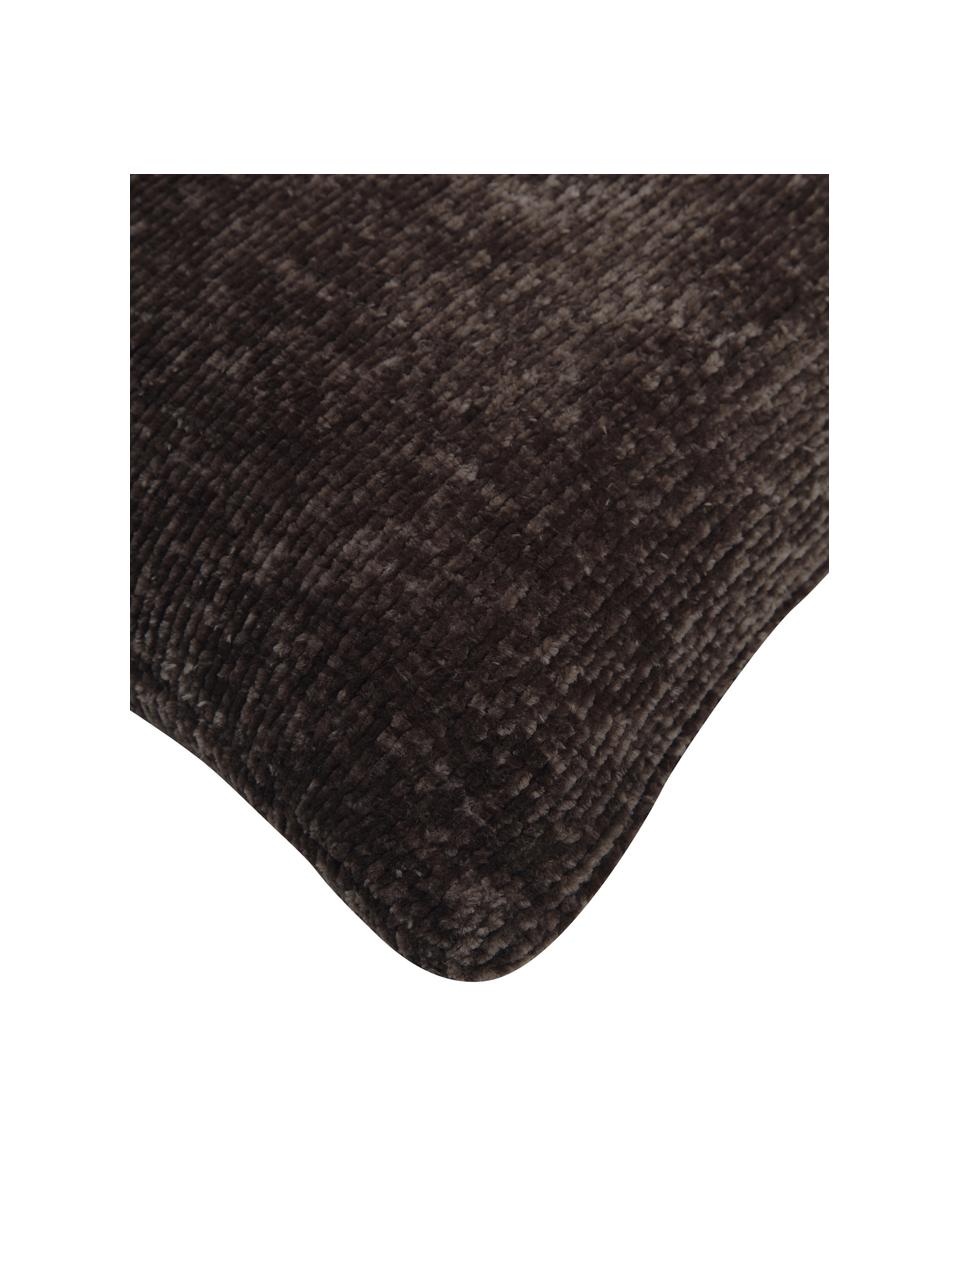 Federa arredo morbida in ciniglia color grigio scuro Beckett, 100% poliestere, Grigio scuro, Larg. 45 x Lung. 45 cm